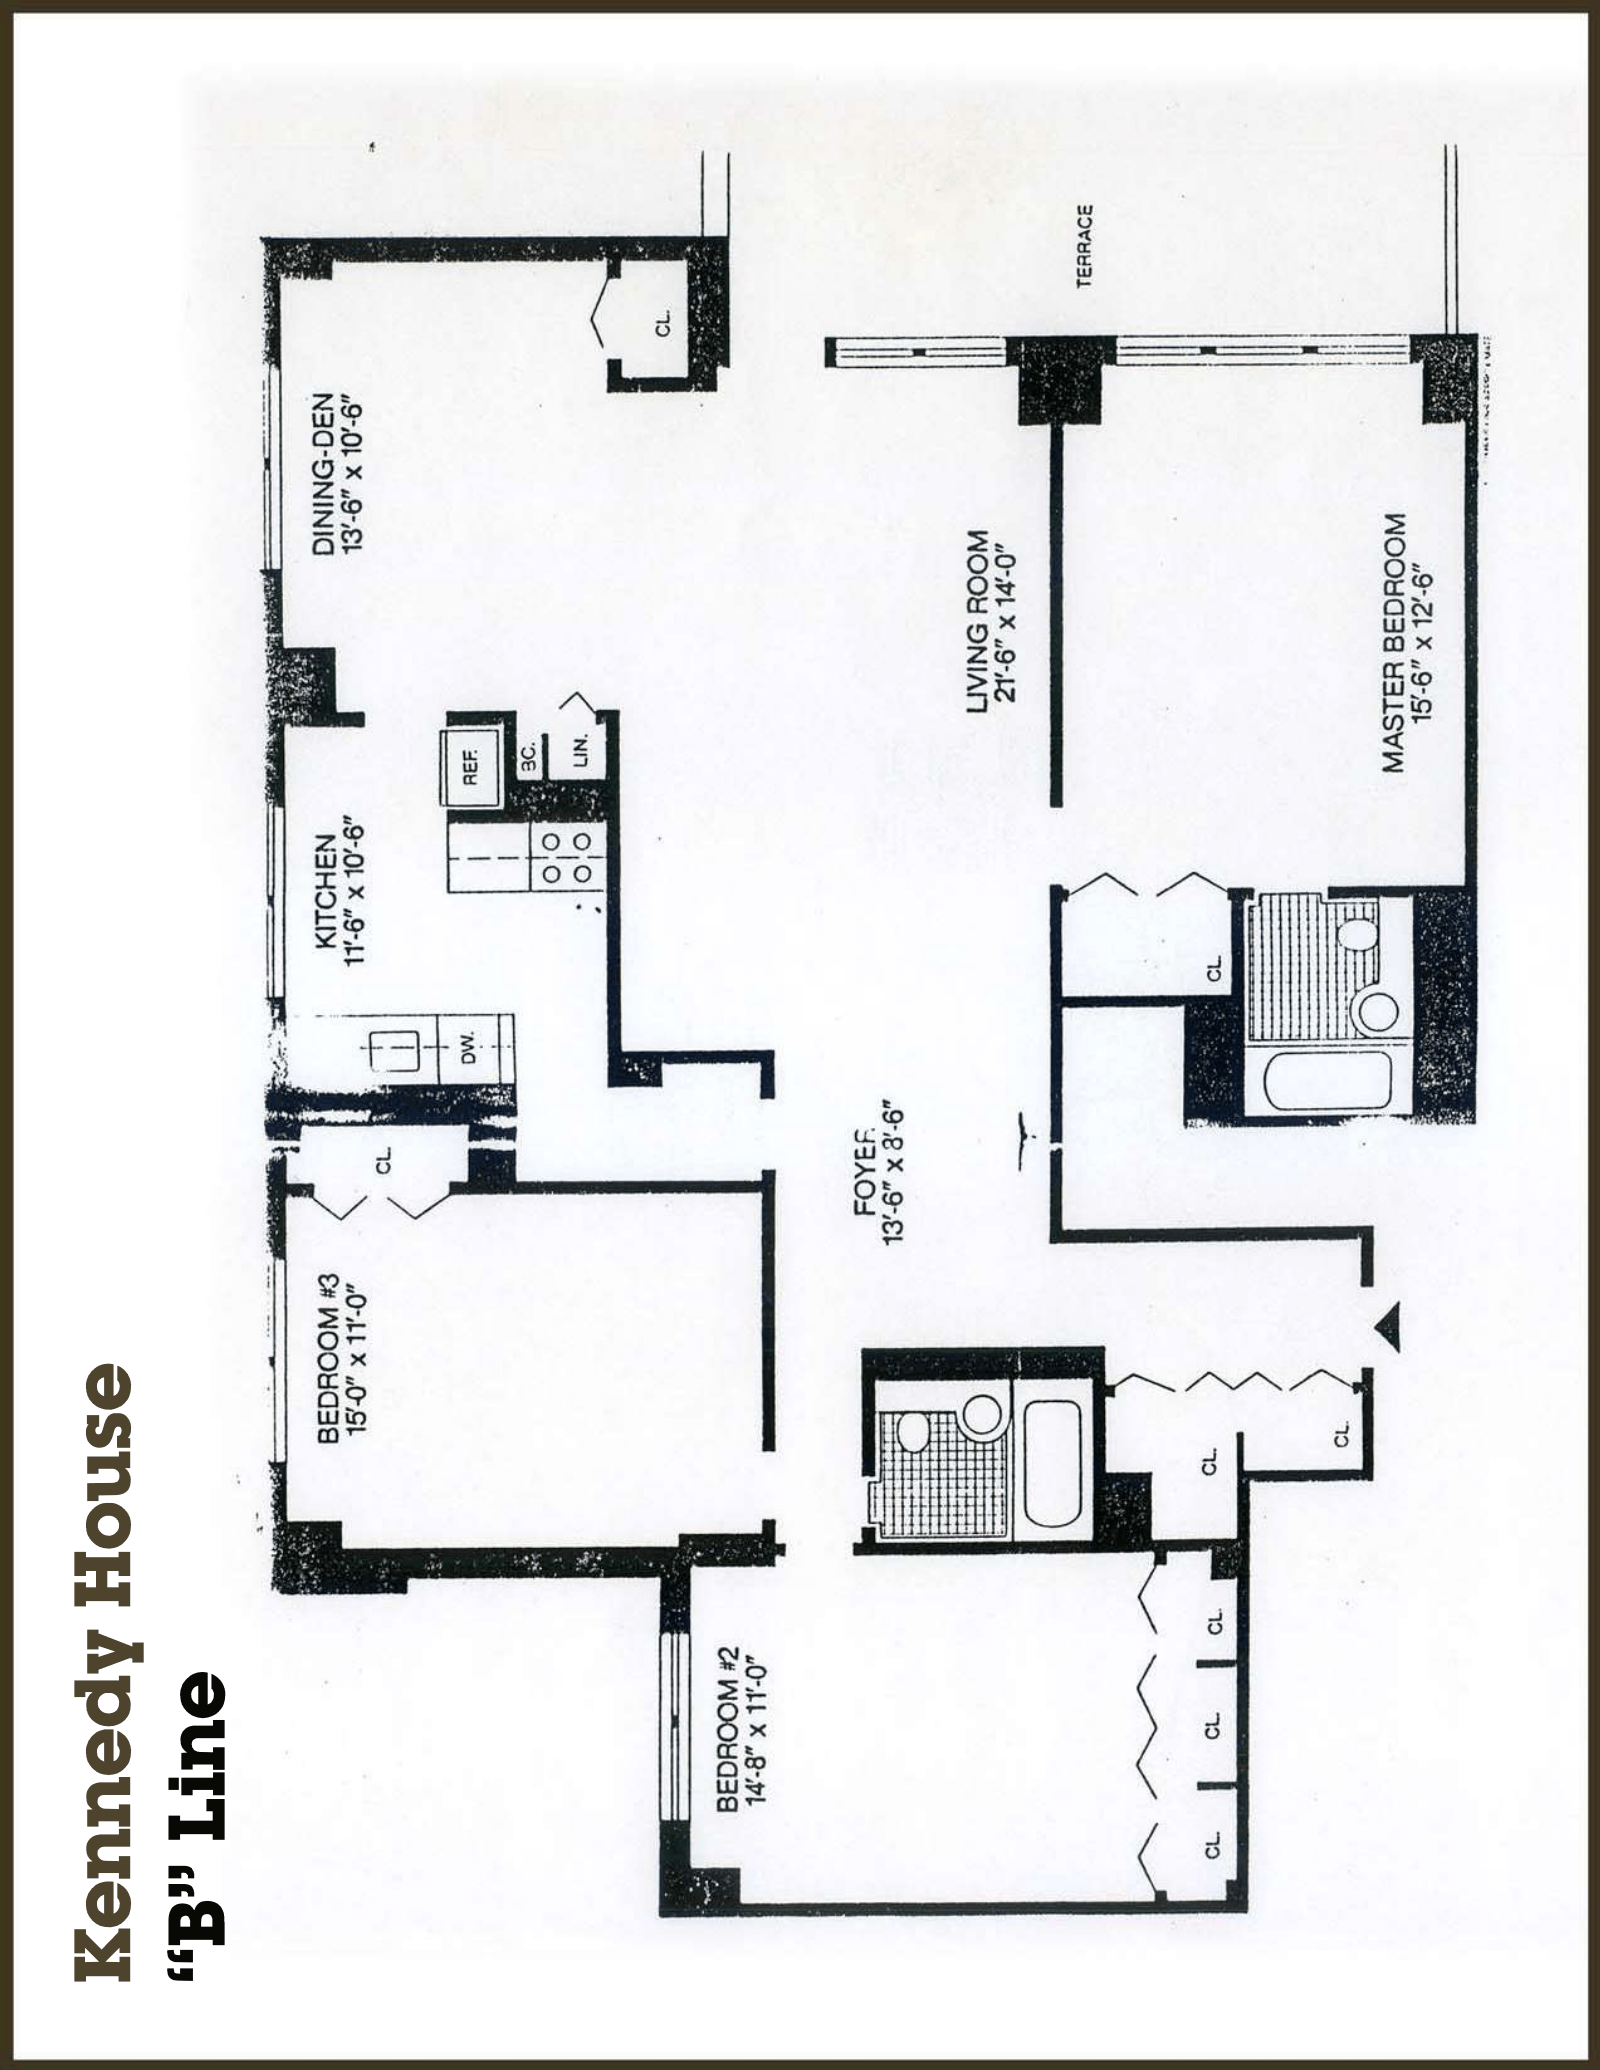 Floorplan for 110-11 Queens Blvd, 15B